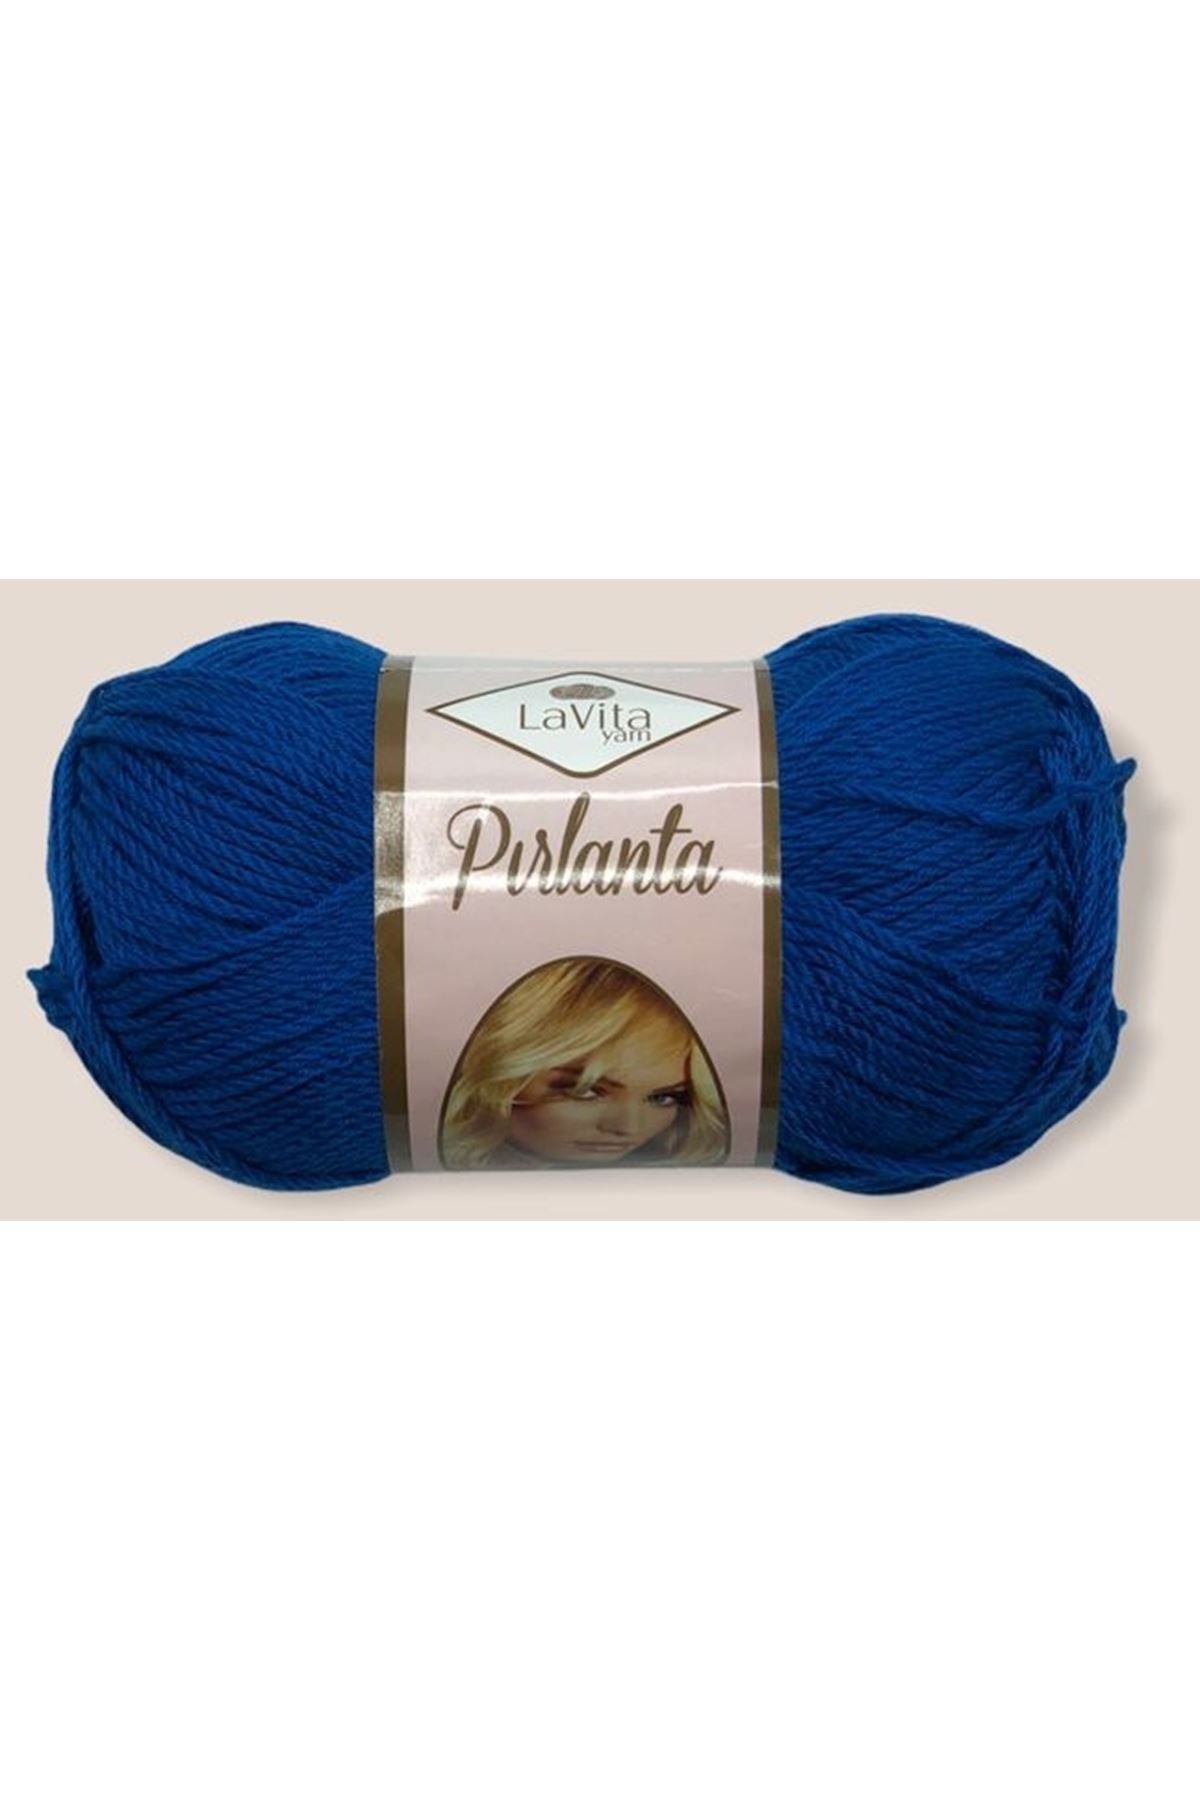 Lavita Pırlanta - 0605 Saks Mavi